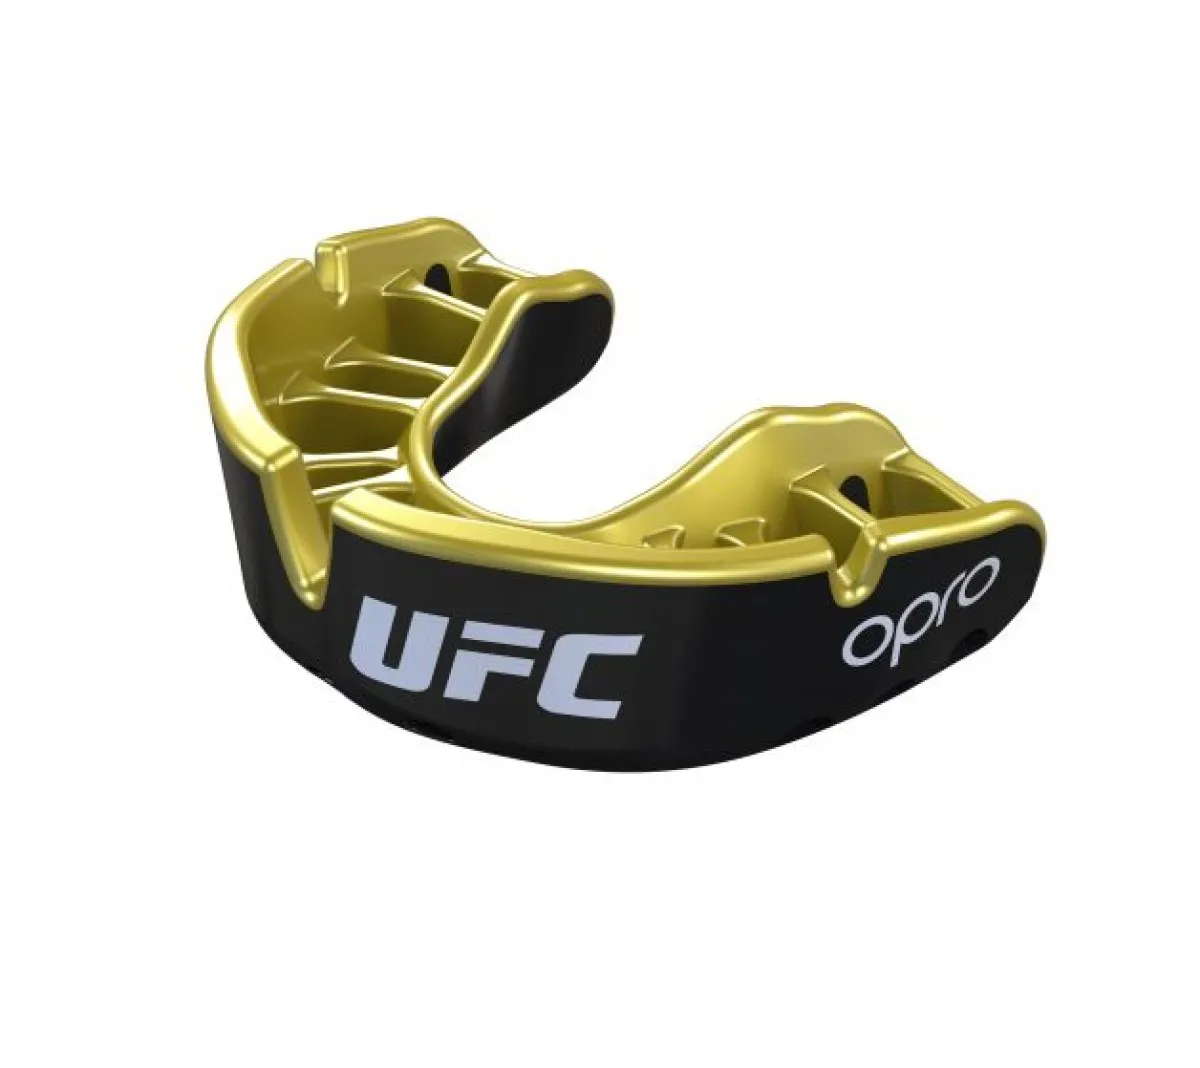 OPRO Zahnschutz UFC Silver - rot/schwarz, SeniorOPRO Zahnschutz UFC Gold - rot/silber, SeniorOPRO Zahnschutz UFC Gold - schwarz/gold, Senior